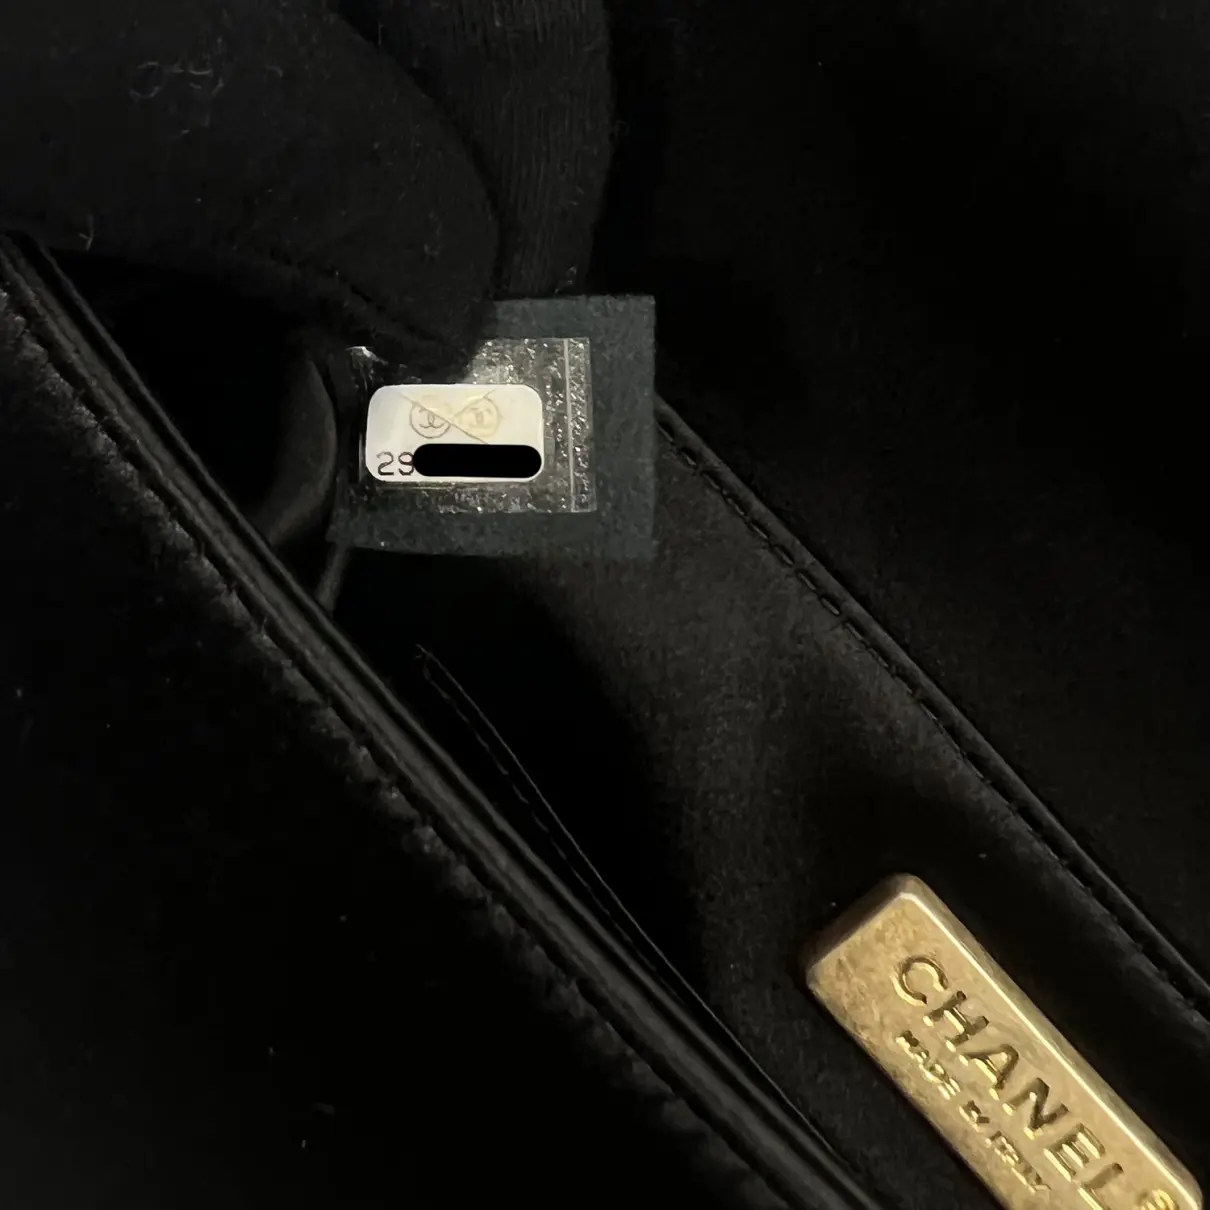 Silk clutch bag Chanel